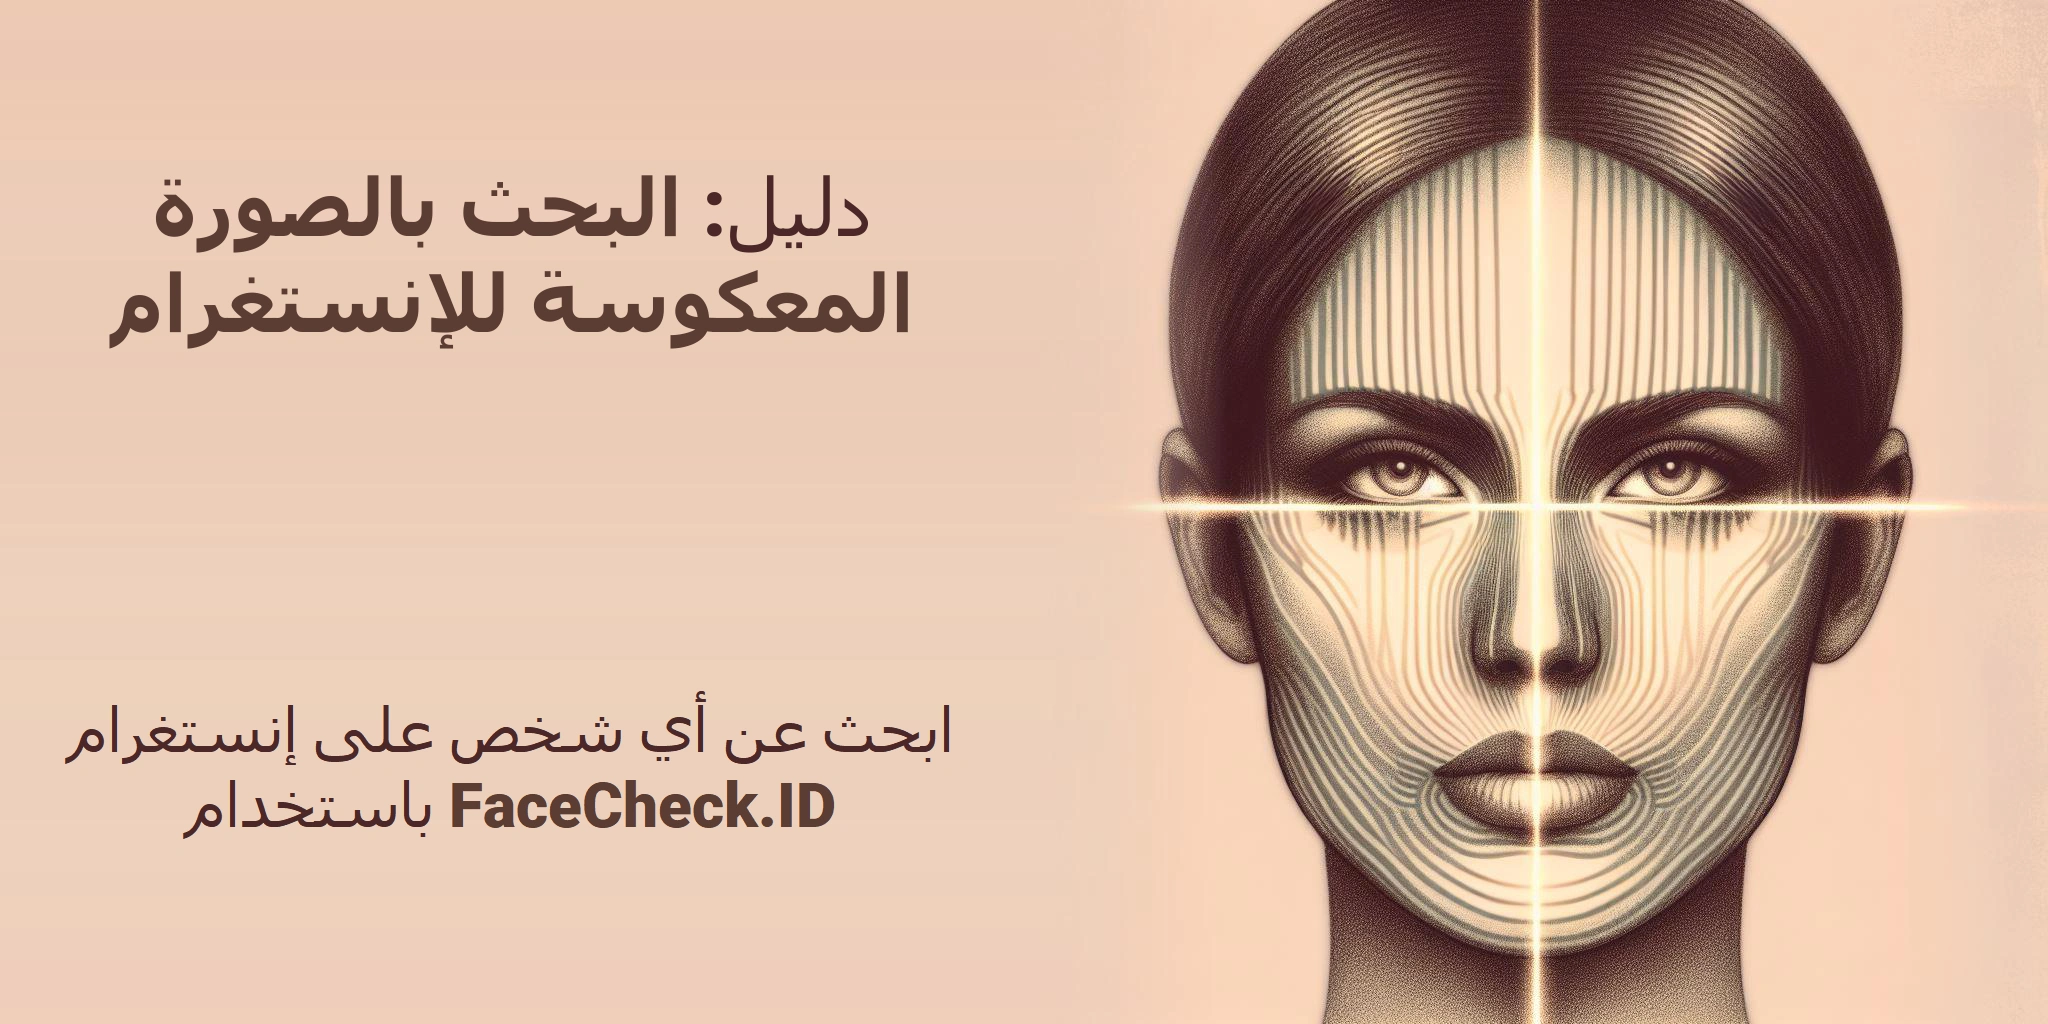 دليل: البحث بالصورة المعكوسة للإنستغرام ابحث عن أي شخص على إنستغرام باستخدام FaceCheck.ID